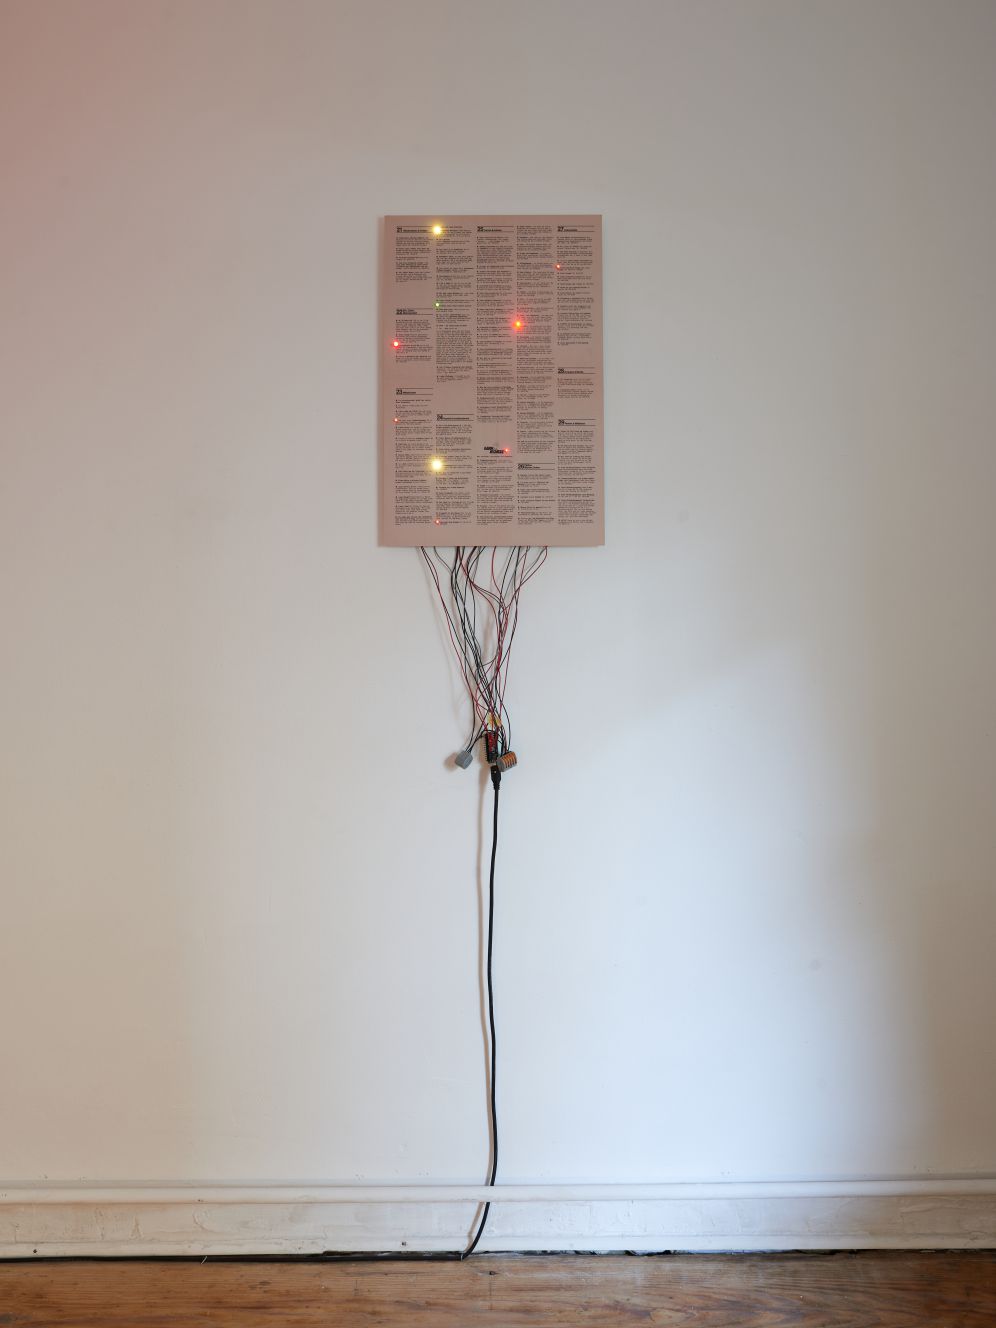 *Ein-, Zwei-, Mehrsamkeit*, Digital print on cardboard, LED, cable, Arduino platform, 47 x 31 cm, 2020